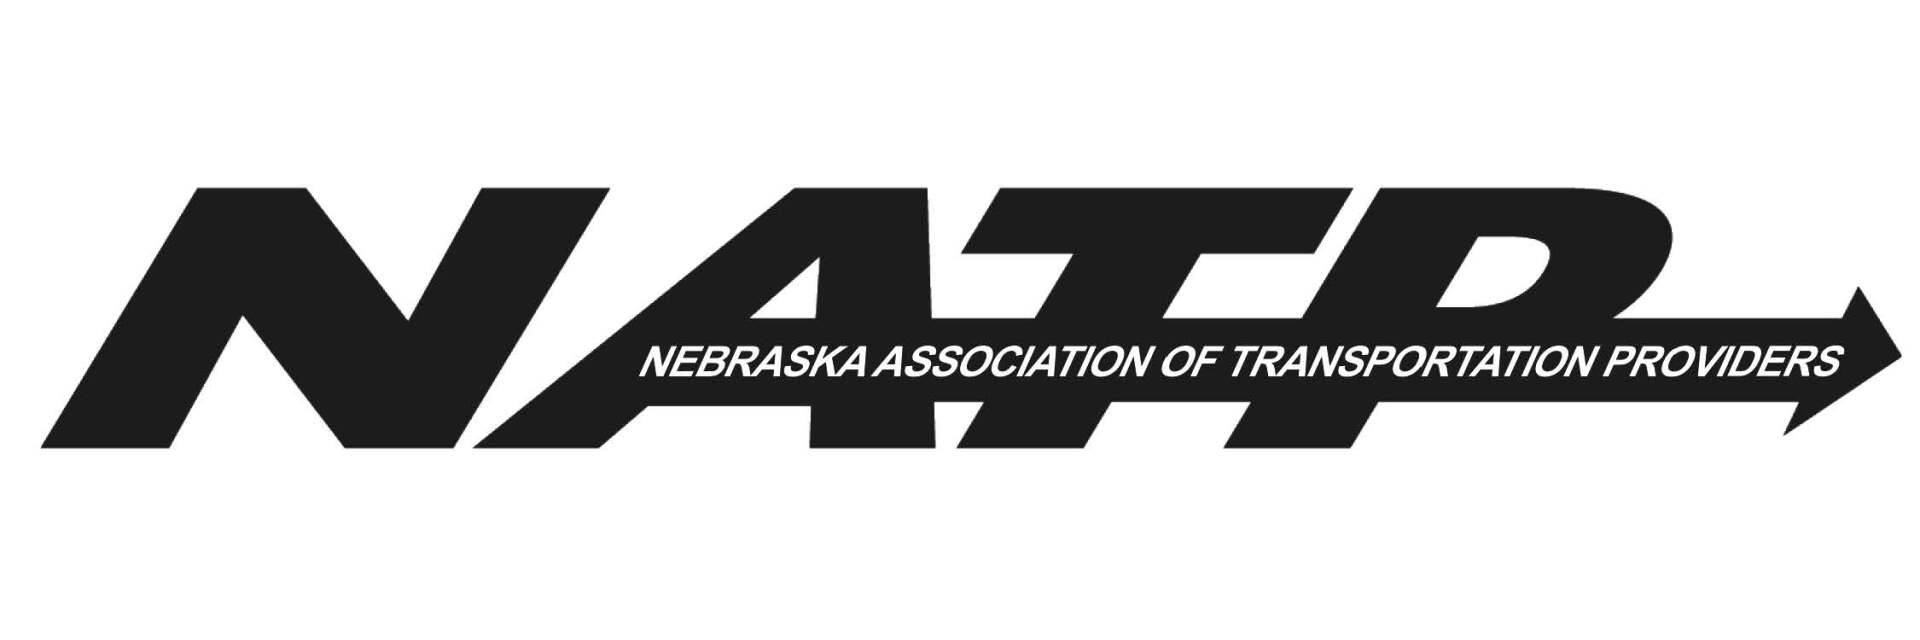 Nebraska Association of Transportation Providers logo